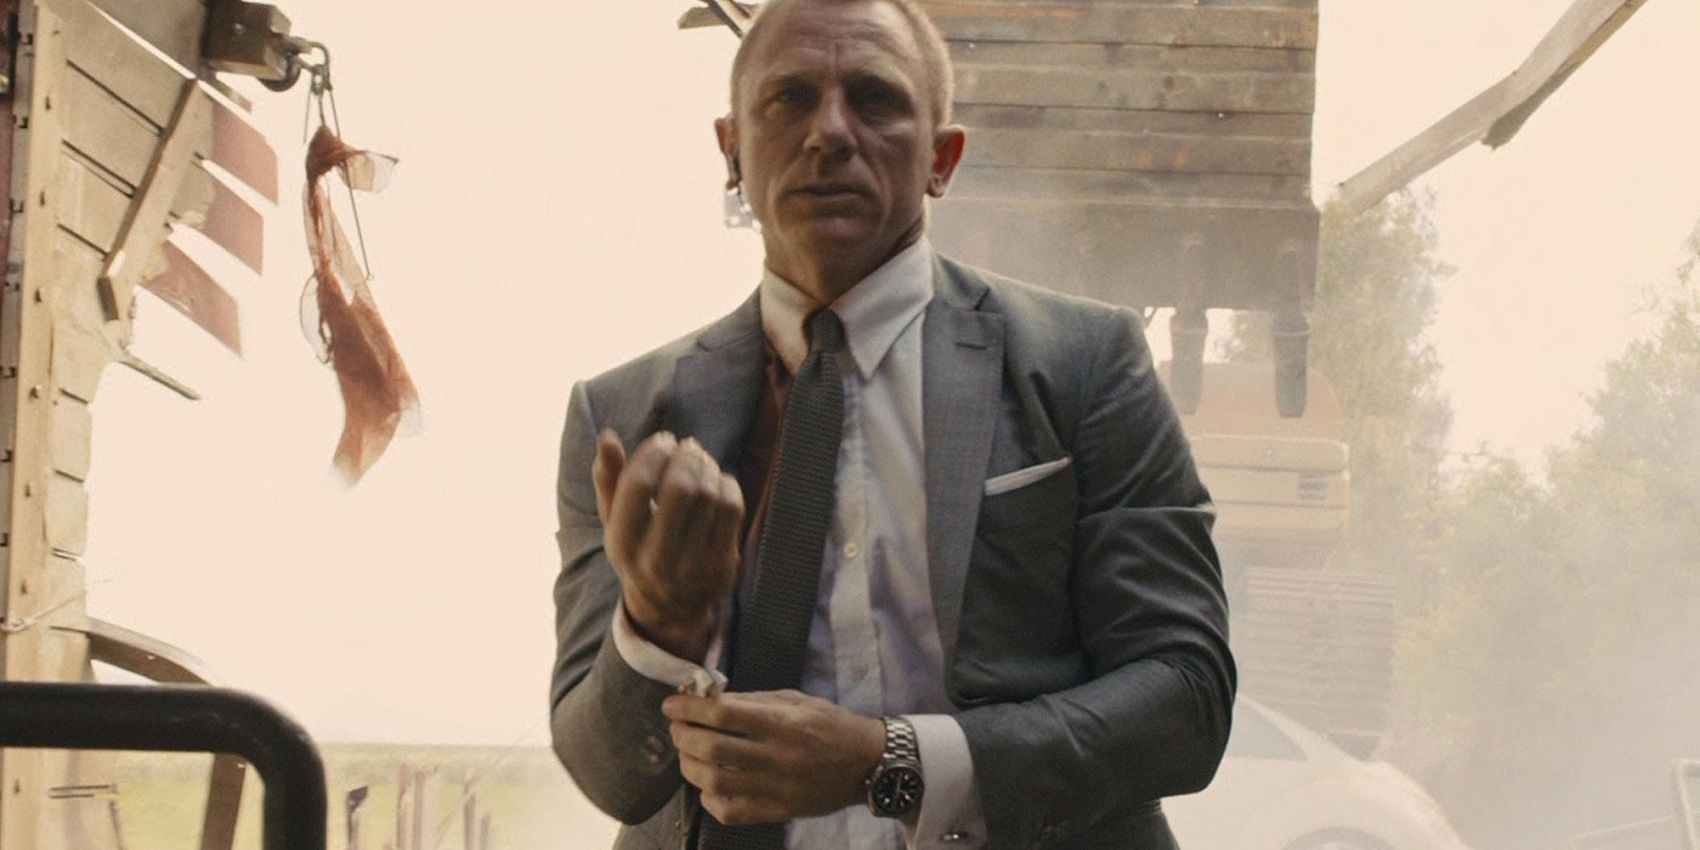 James Bond checks his cufflinks while a train crashes behind him in Skyfall.